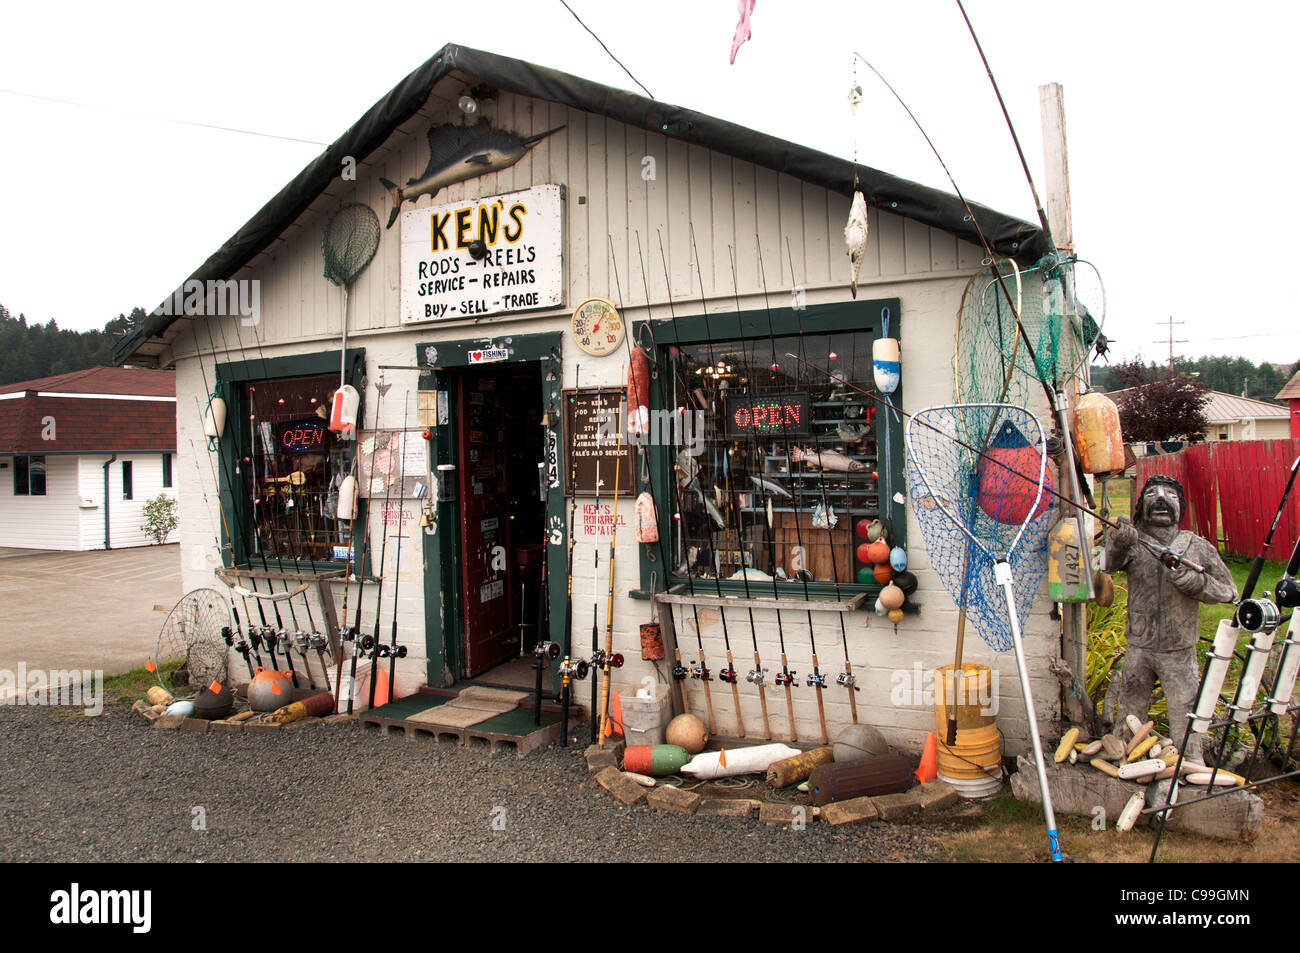 Ken's Rod's Reel,s et de poisson Magasin Oshkosh Oregon États-unis poisson de pêche pêcheur pêcheur La pêche à la ligne Banque D'Images